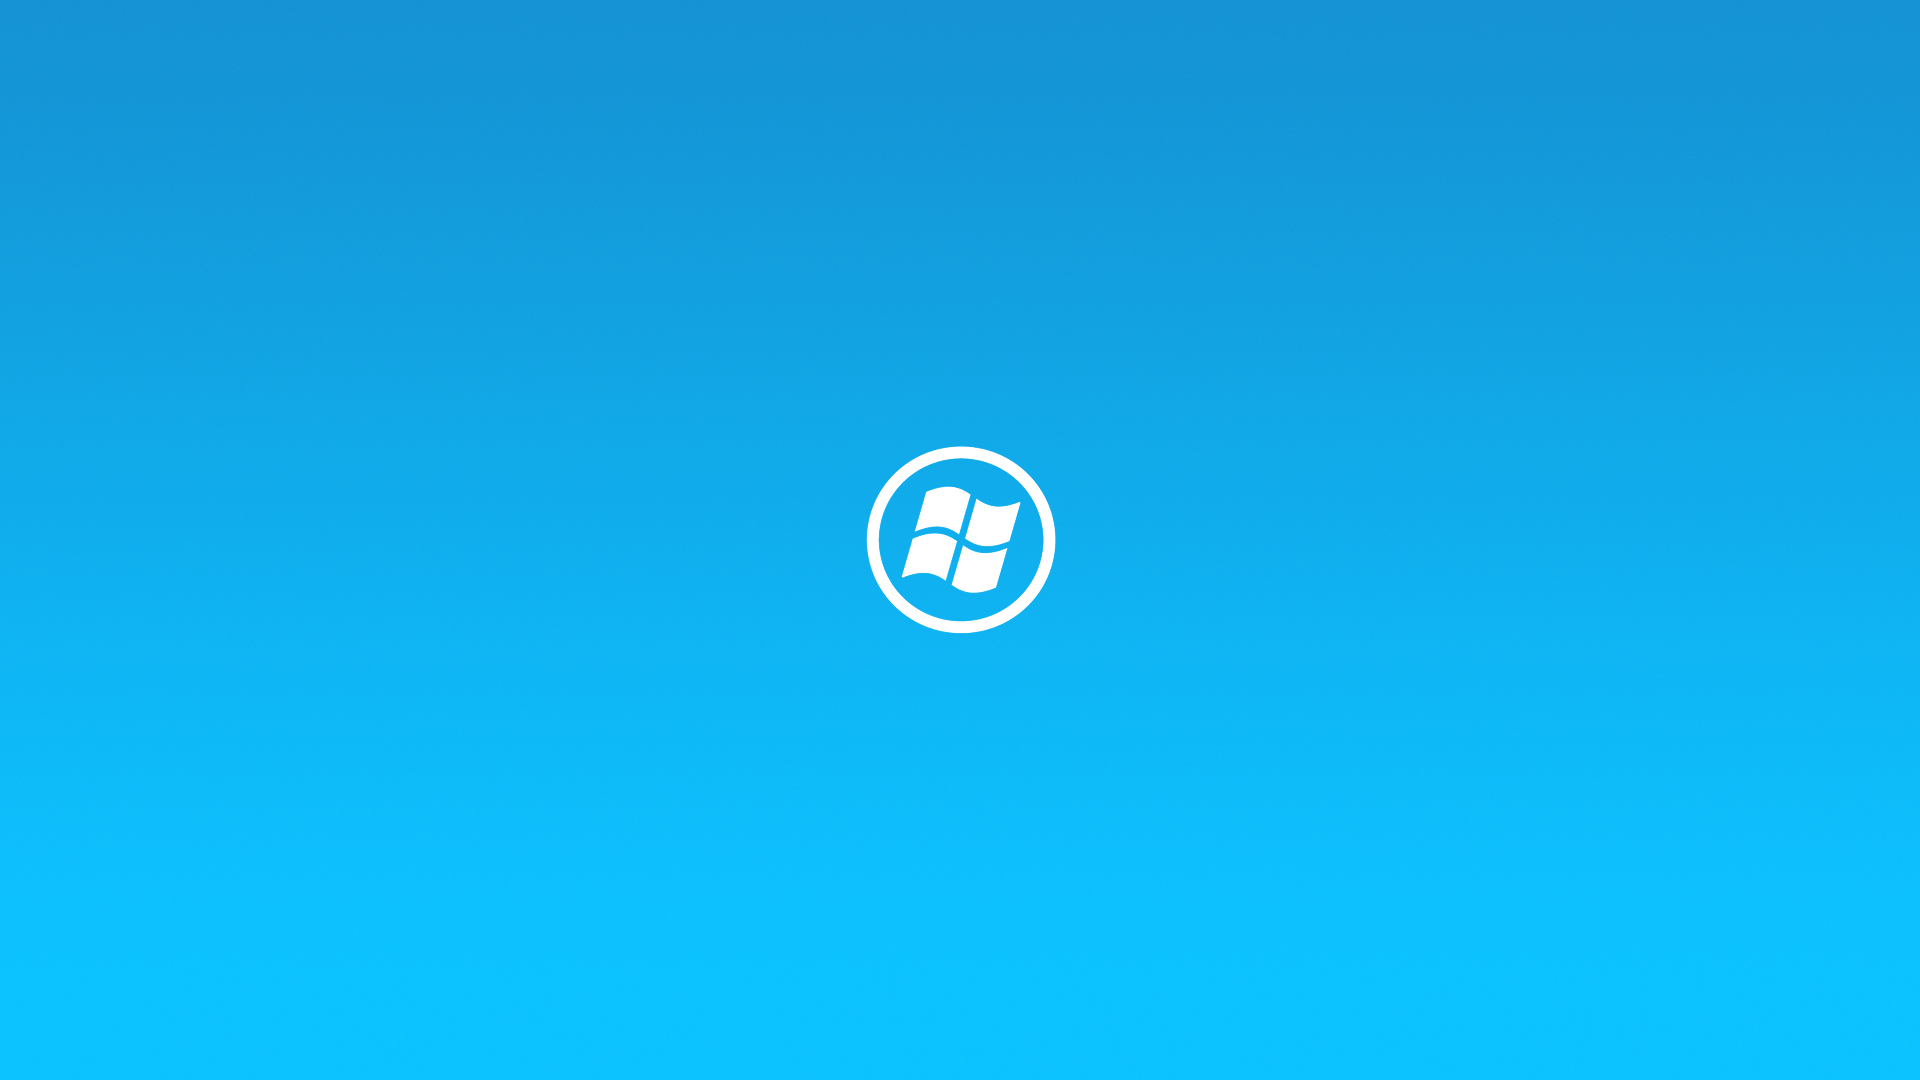 Windows 8 Blue by clsidfft3g on DeviantArt